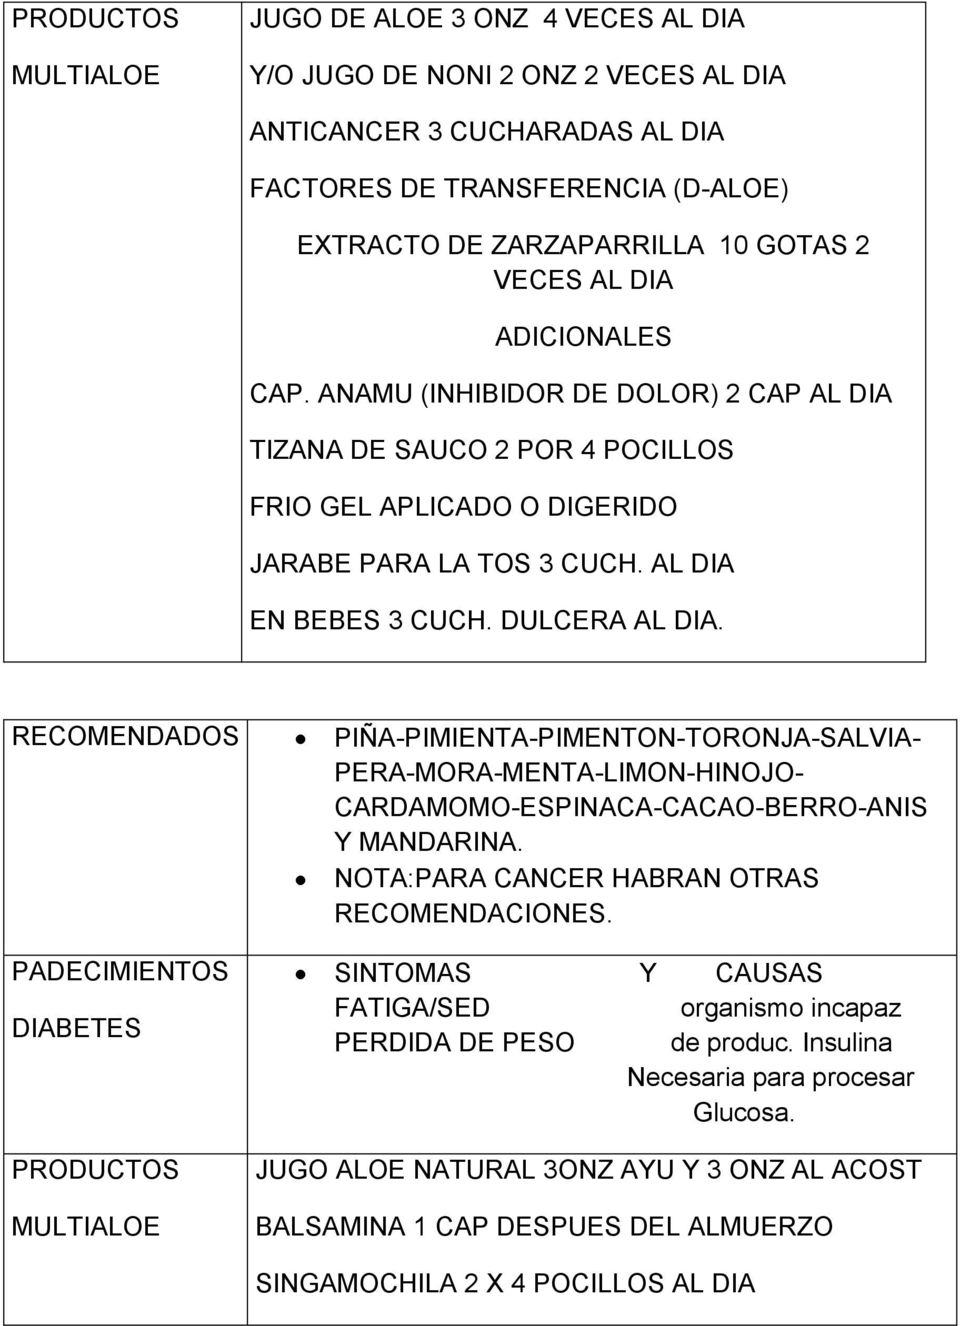 DIABETES PIÑA-PIMIENTA-PIMENTON-TORONJA-SALVIA- PERA-MORA-MENTA-LIMON-HINOJO- CARDAMOMO-ESPINACA-CACAO-BERRO-ANIS Y MANDARINA. NOTA:PARA CANCER HABRAN OTRAS RECOMENDACIONES.